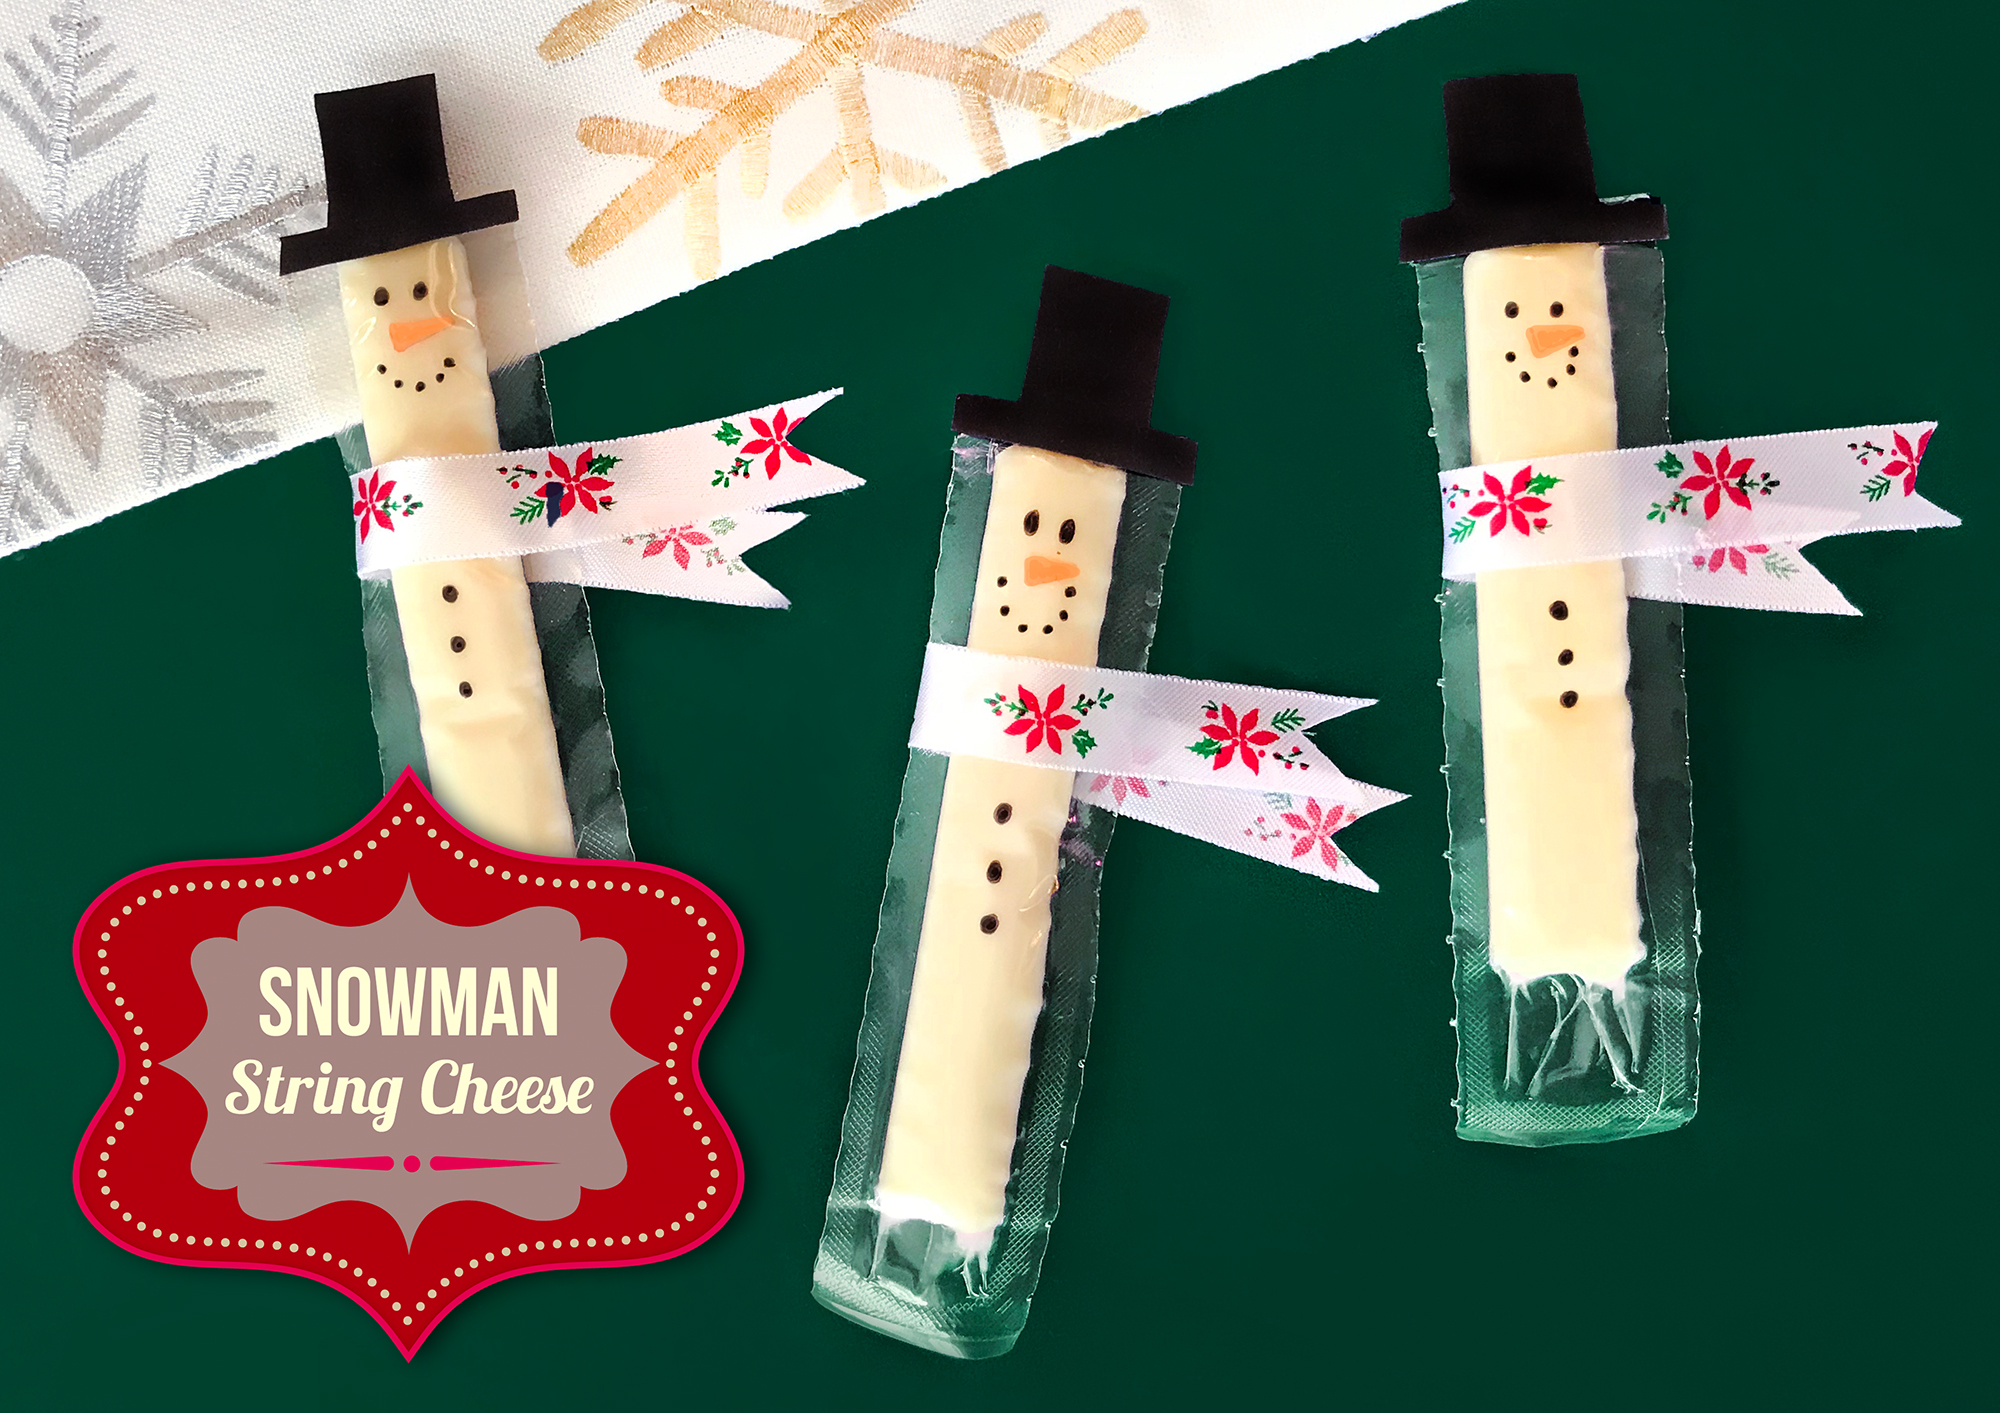 Snowman String Cheese